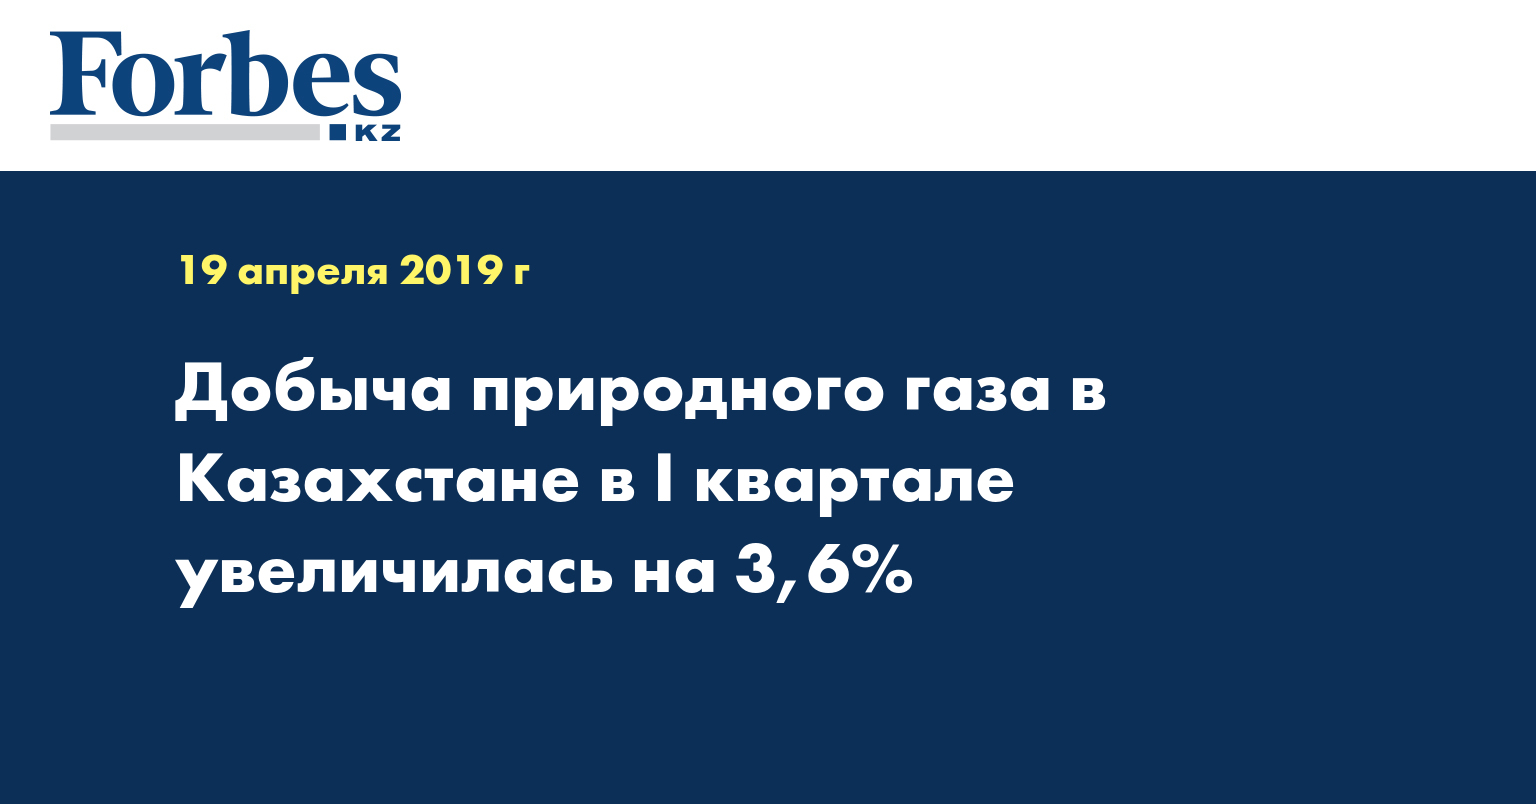 Добыча природного газа в Казахстане в I квартале увеличилась на 3,6%